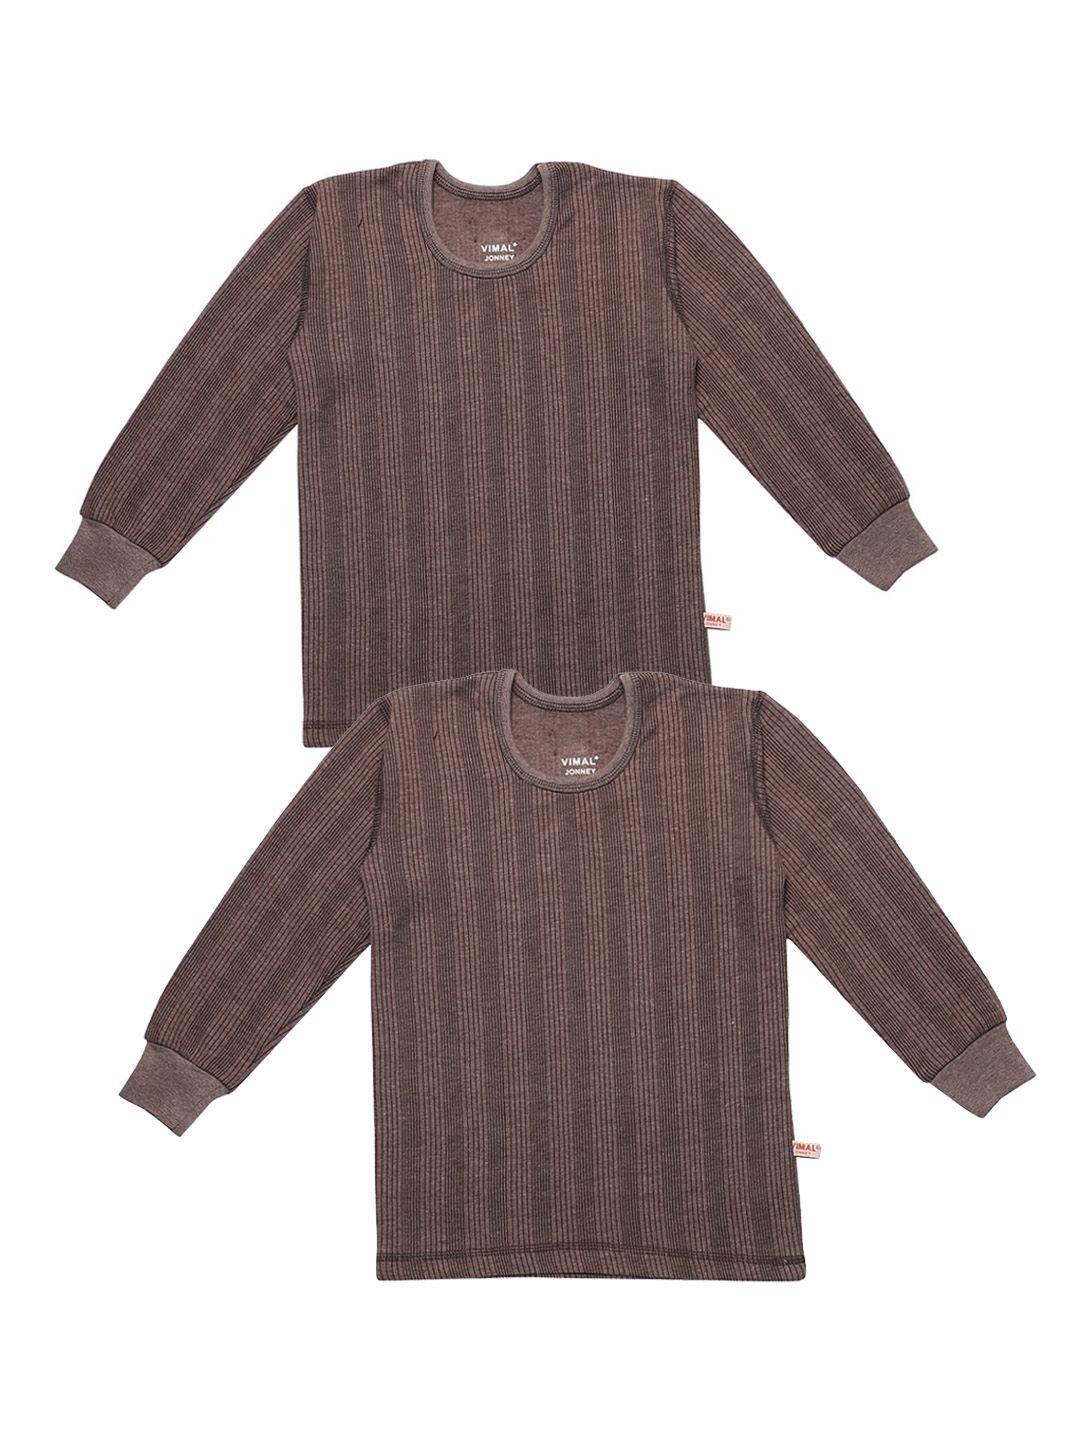 vimal jonney kids pack of 2 brown striped thermal tops